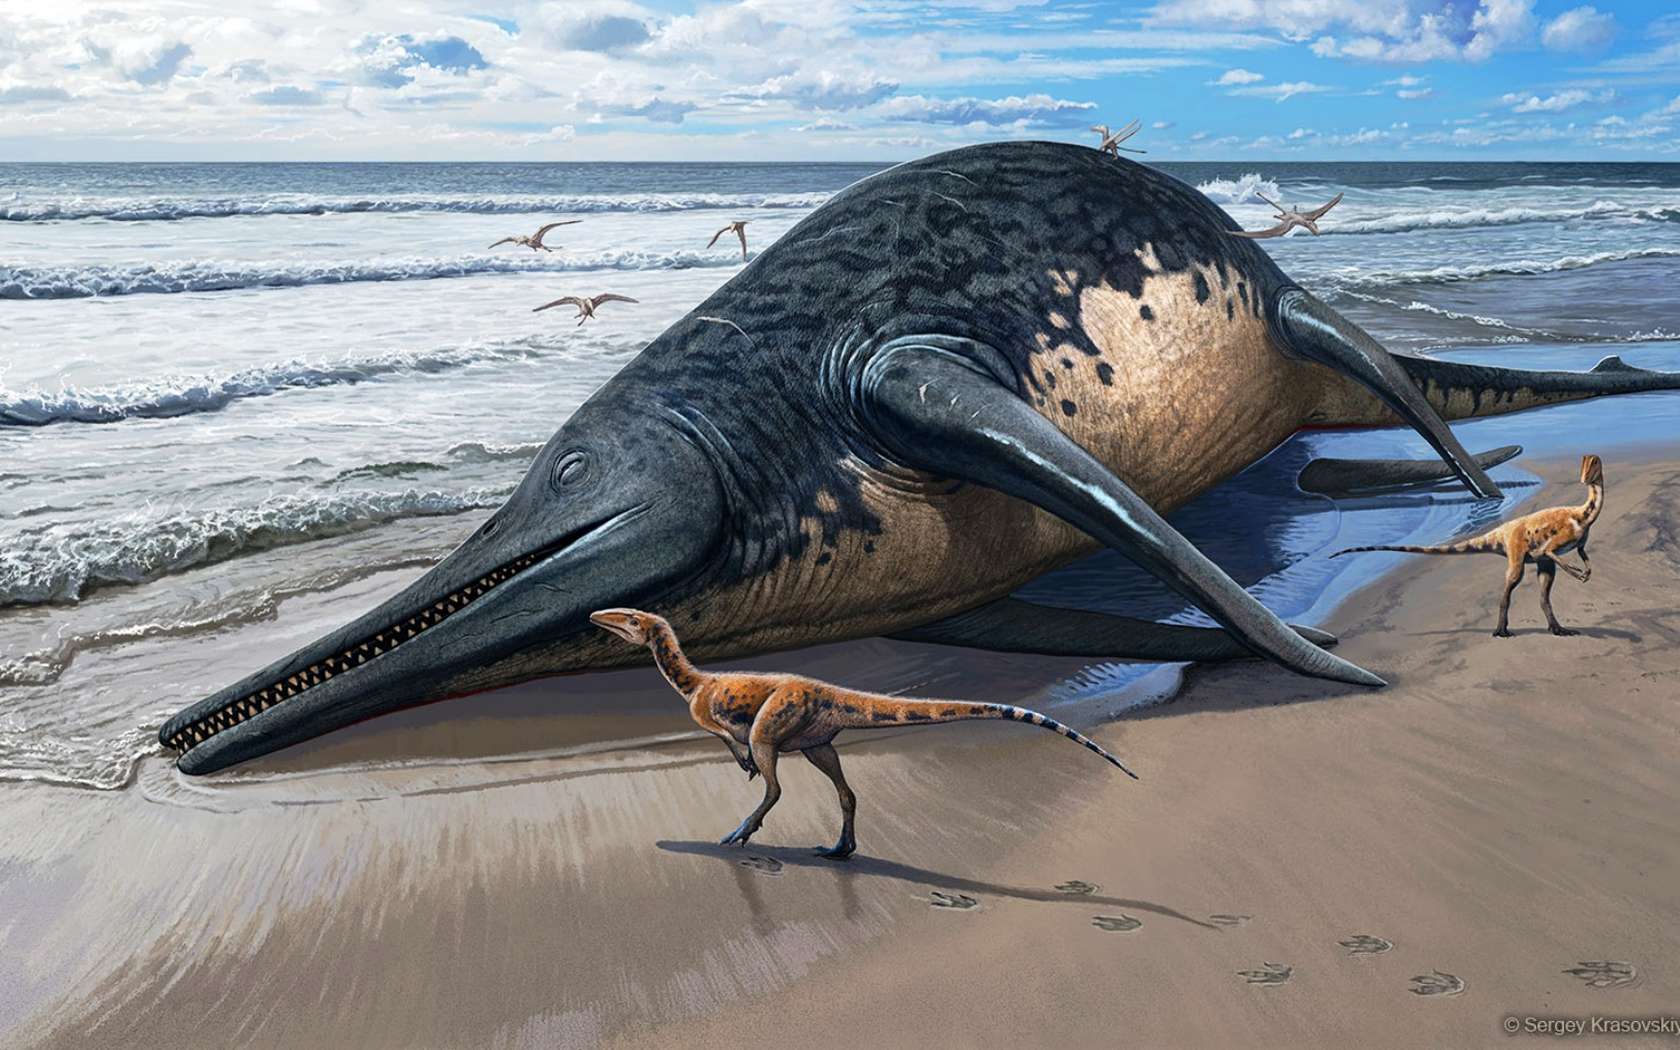 Le plus grand reptile marin connu de l'époque des dinosaures a peut-être été découvert